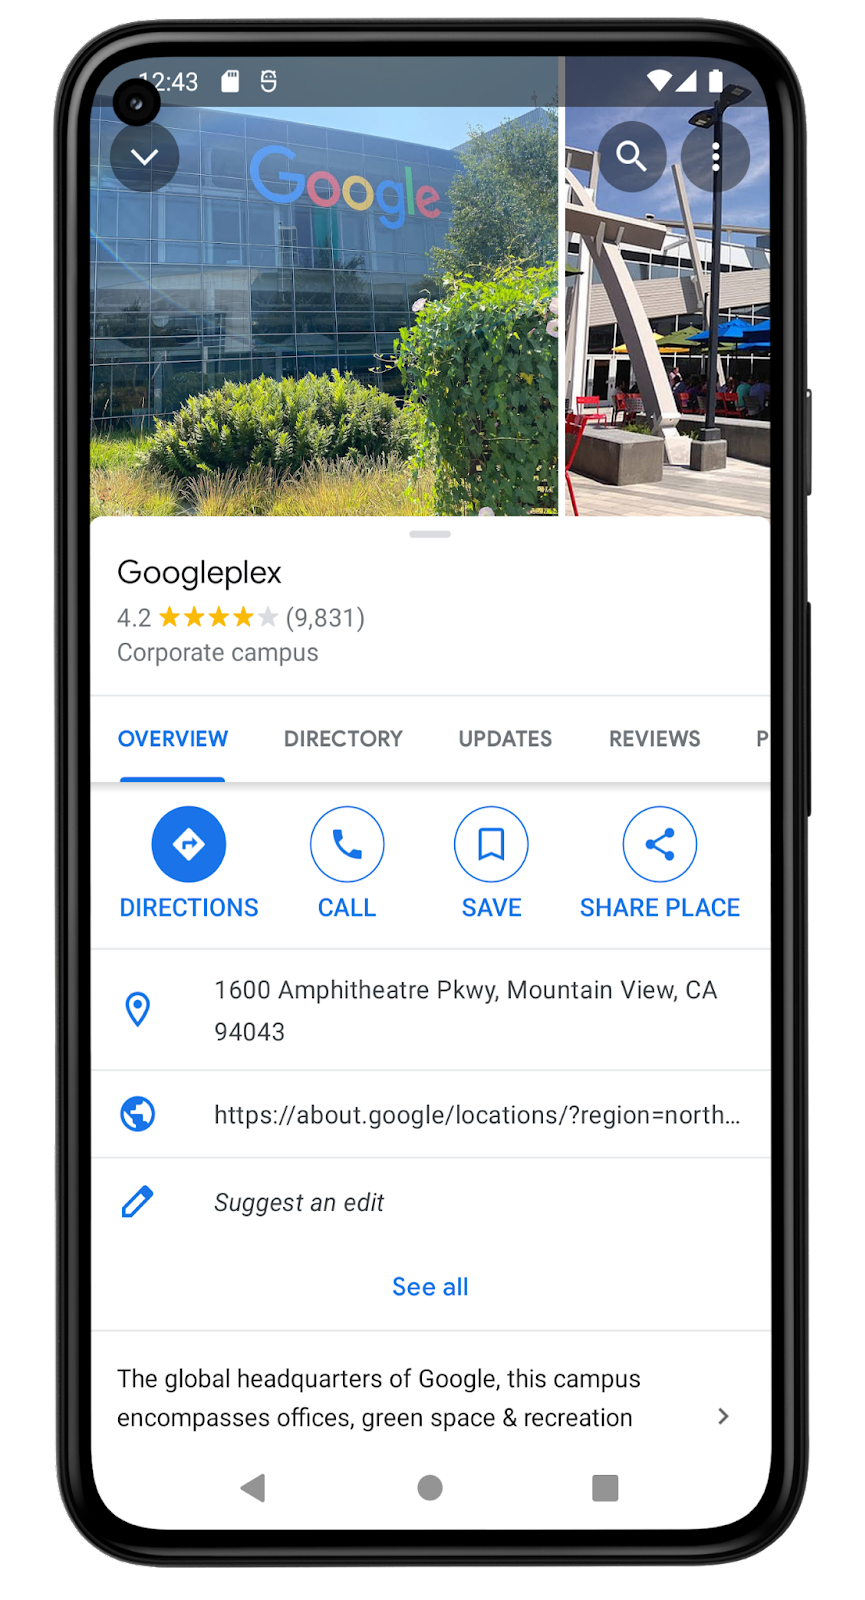 이 Google 지도 앱 스크린샷은 Googleplex 위치 세부정보를 보여줍니다. 회사 캠퍼스이며 Google의 글로벌 본사로 설명되어 있습니다. 위치는 9,831개 리뷰에서 별표 평점이 4.2입니다. 주소는 1600 Amphitheatre Pkwy, Mountain View, CA 94043입니다. 이 화면에는 사용자가 이 위치를 목록에 저장할 수 있는 옵션이 있습니다.